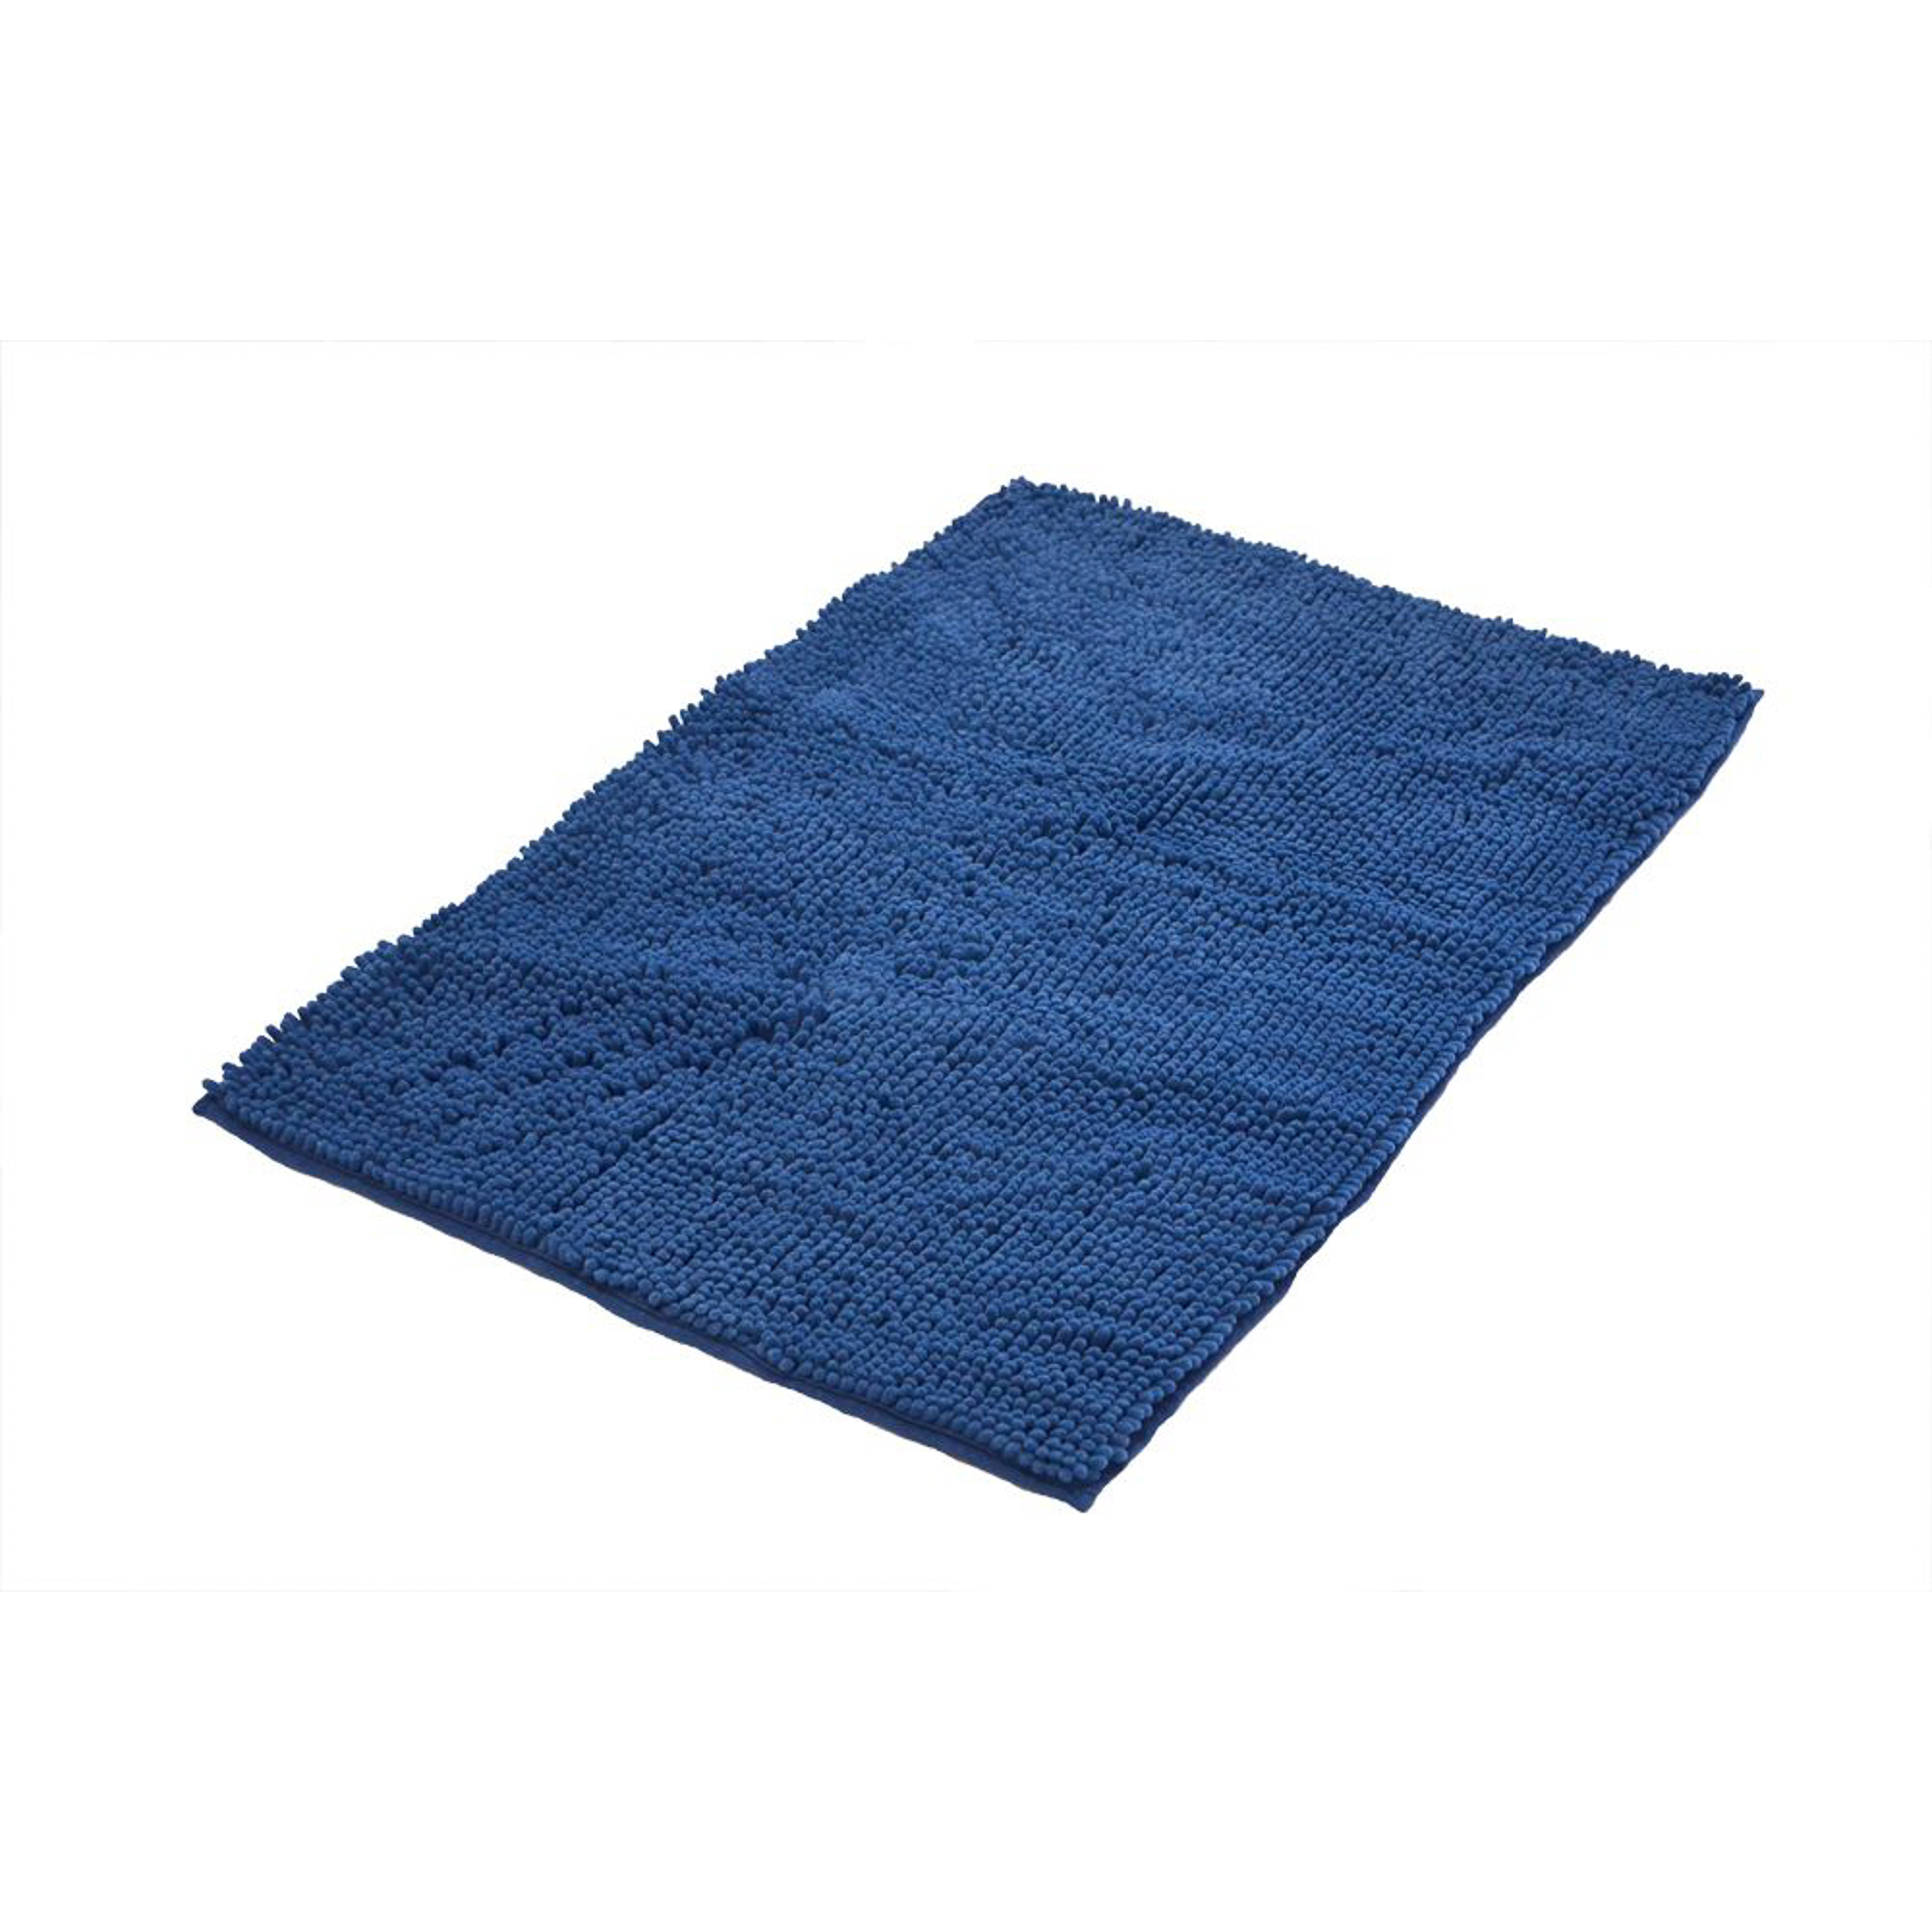 Коврик для ванной комнаты Soft синий 55*85 Ridder коврик для ванной ridder grand prix синий голубой 55x85 см